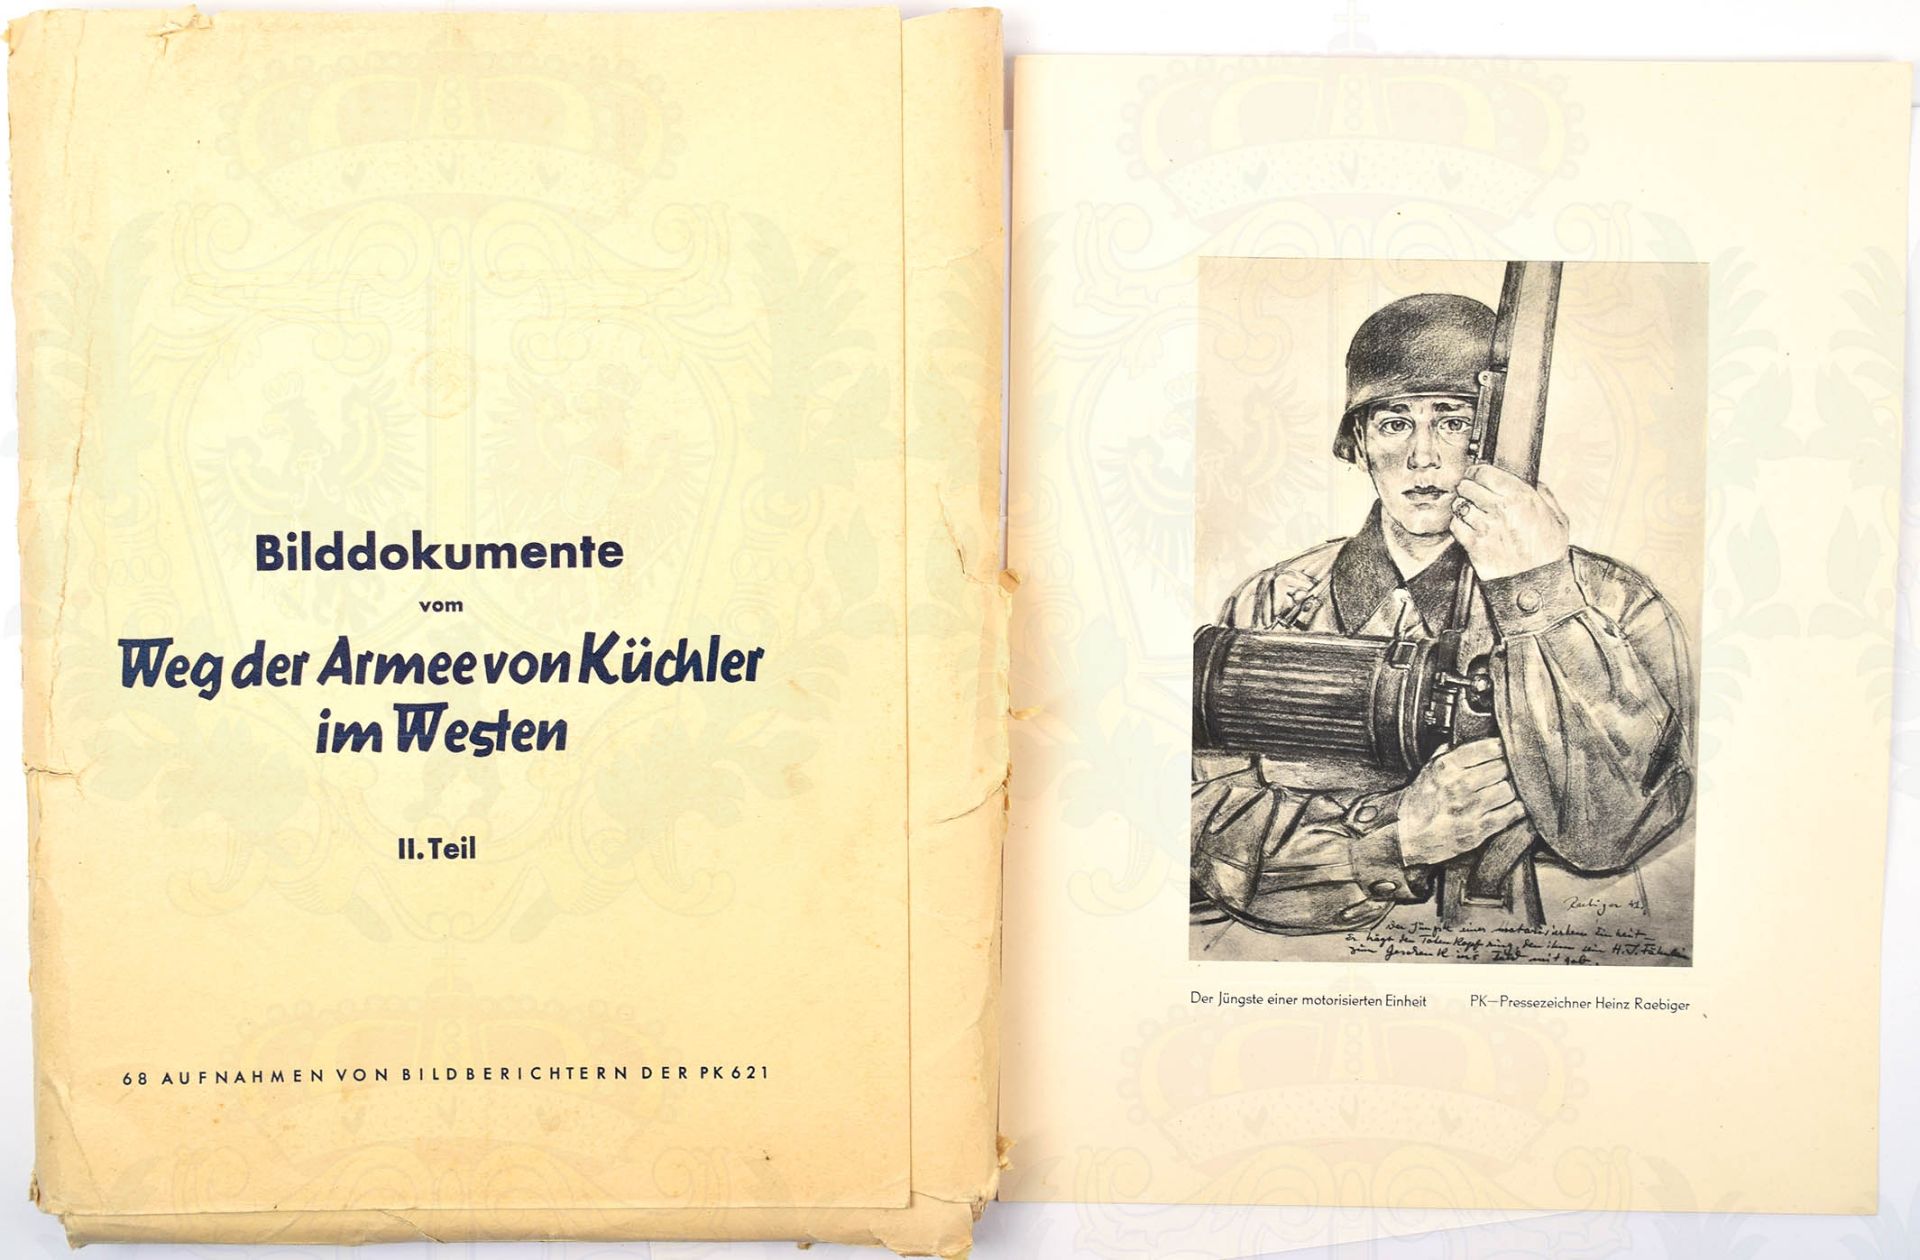 PK-MAPPE, Bilddokumente der Armee von Küchler im Westen, II. Teil, m. 68 Tafeln nach Aufnahmen d. PK